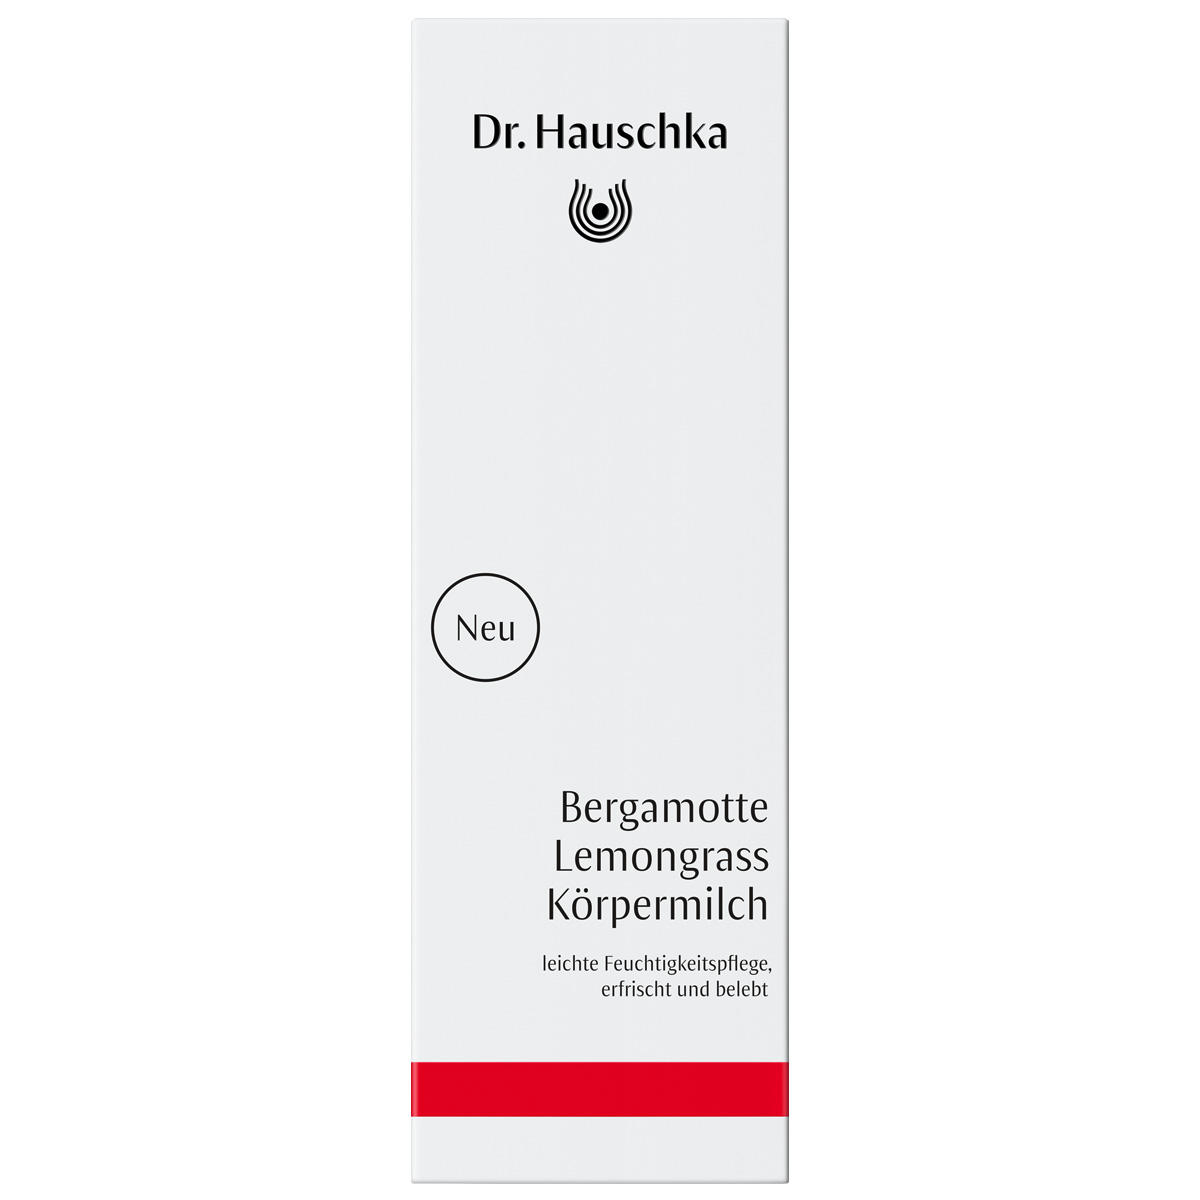 Dr. Hauschka Bergamotte Lemongrass Körpermilch 145 ml - 2